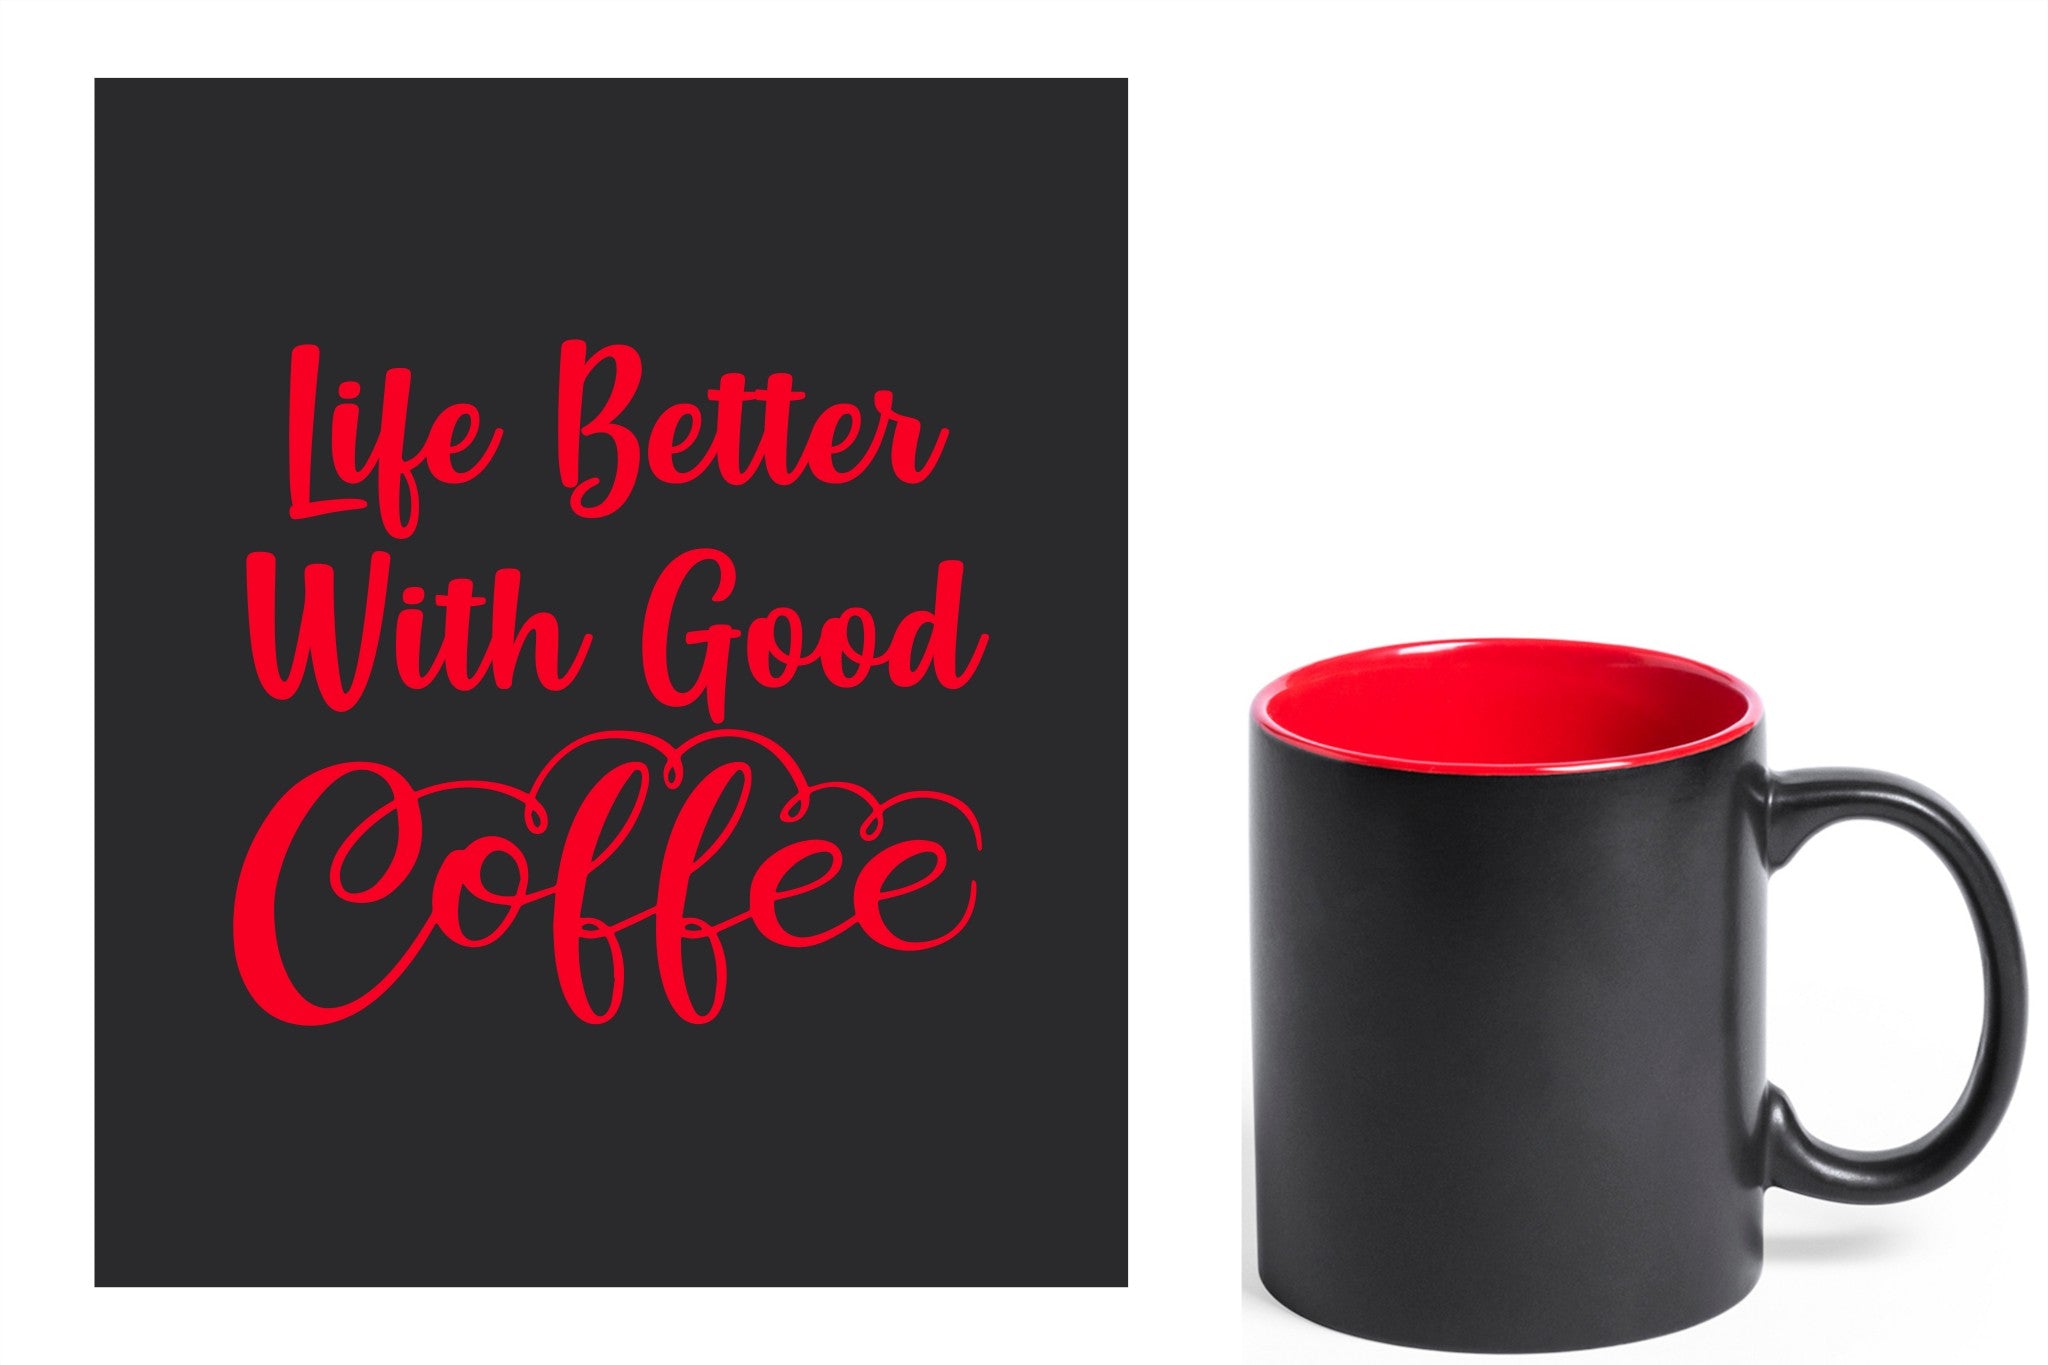 zwarte keramische mok met rode gravure  'Life is better with good coffee'.